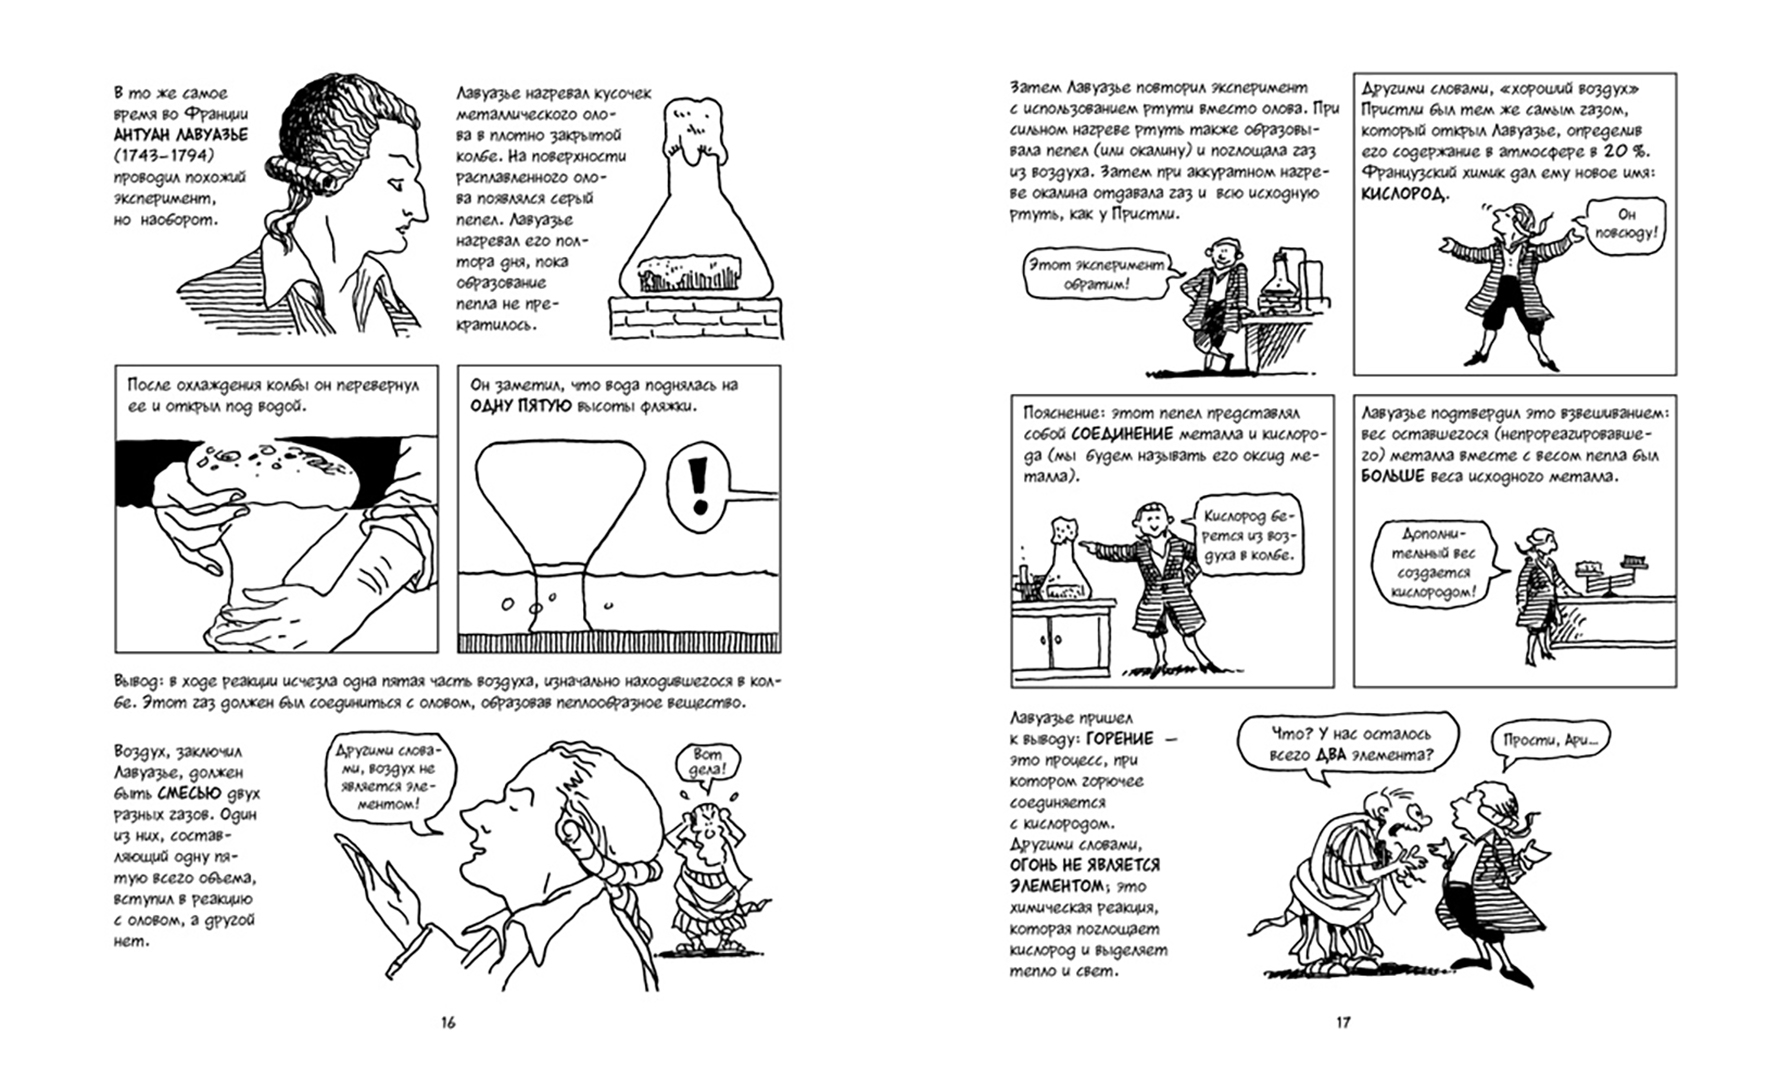 Иллюстрация 3 из 23 для Химия. Естественная наука в комиксах - Гоник, Криддл | Лабиринт - книги. Источник: Лабиринт